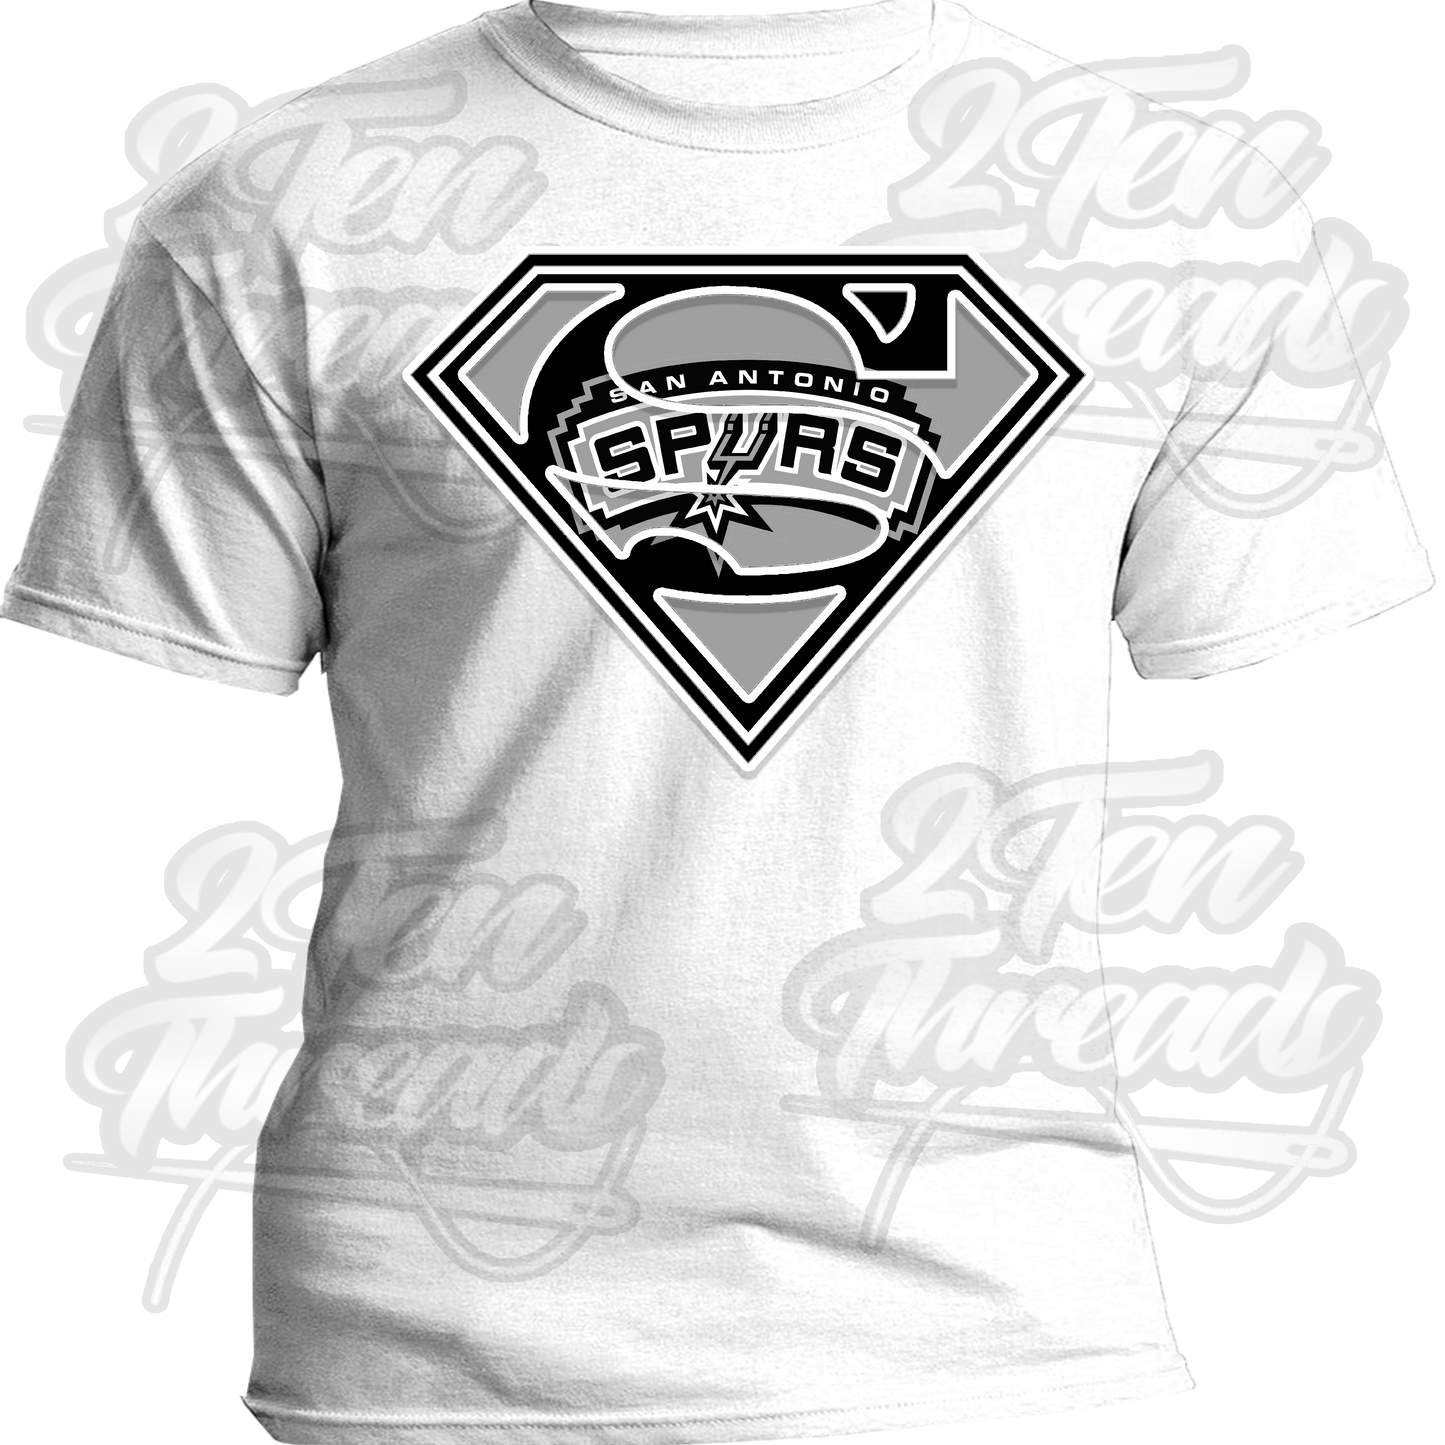 Super Spur Shirt